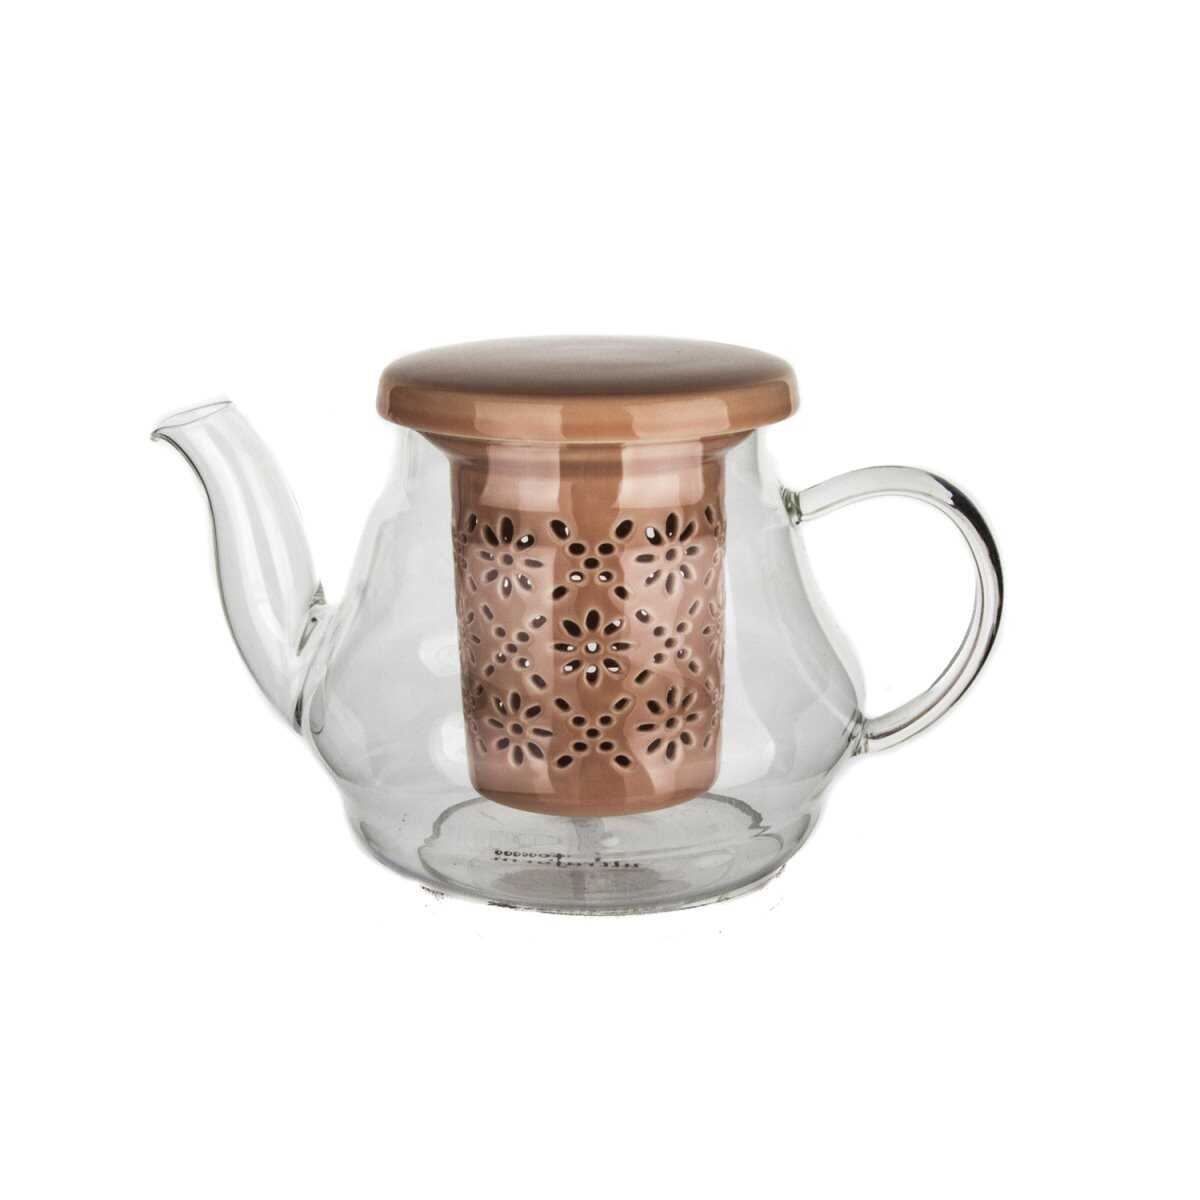 إبريق شاي من البورسلين مع مصفاة وغطاء باللون الوردي